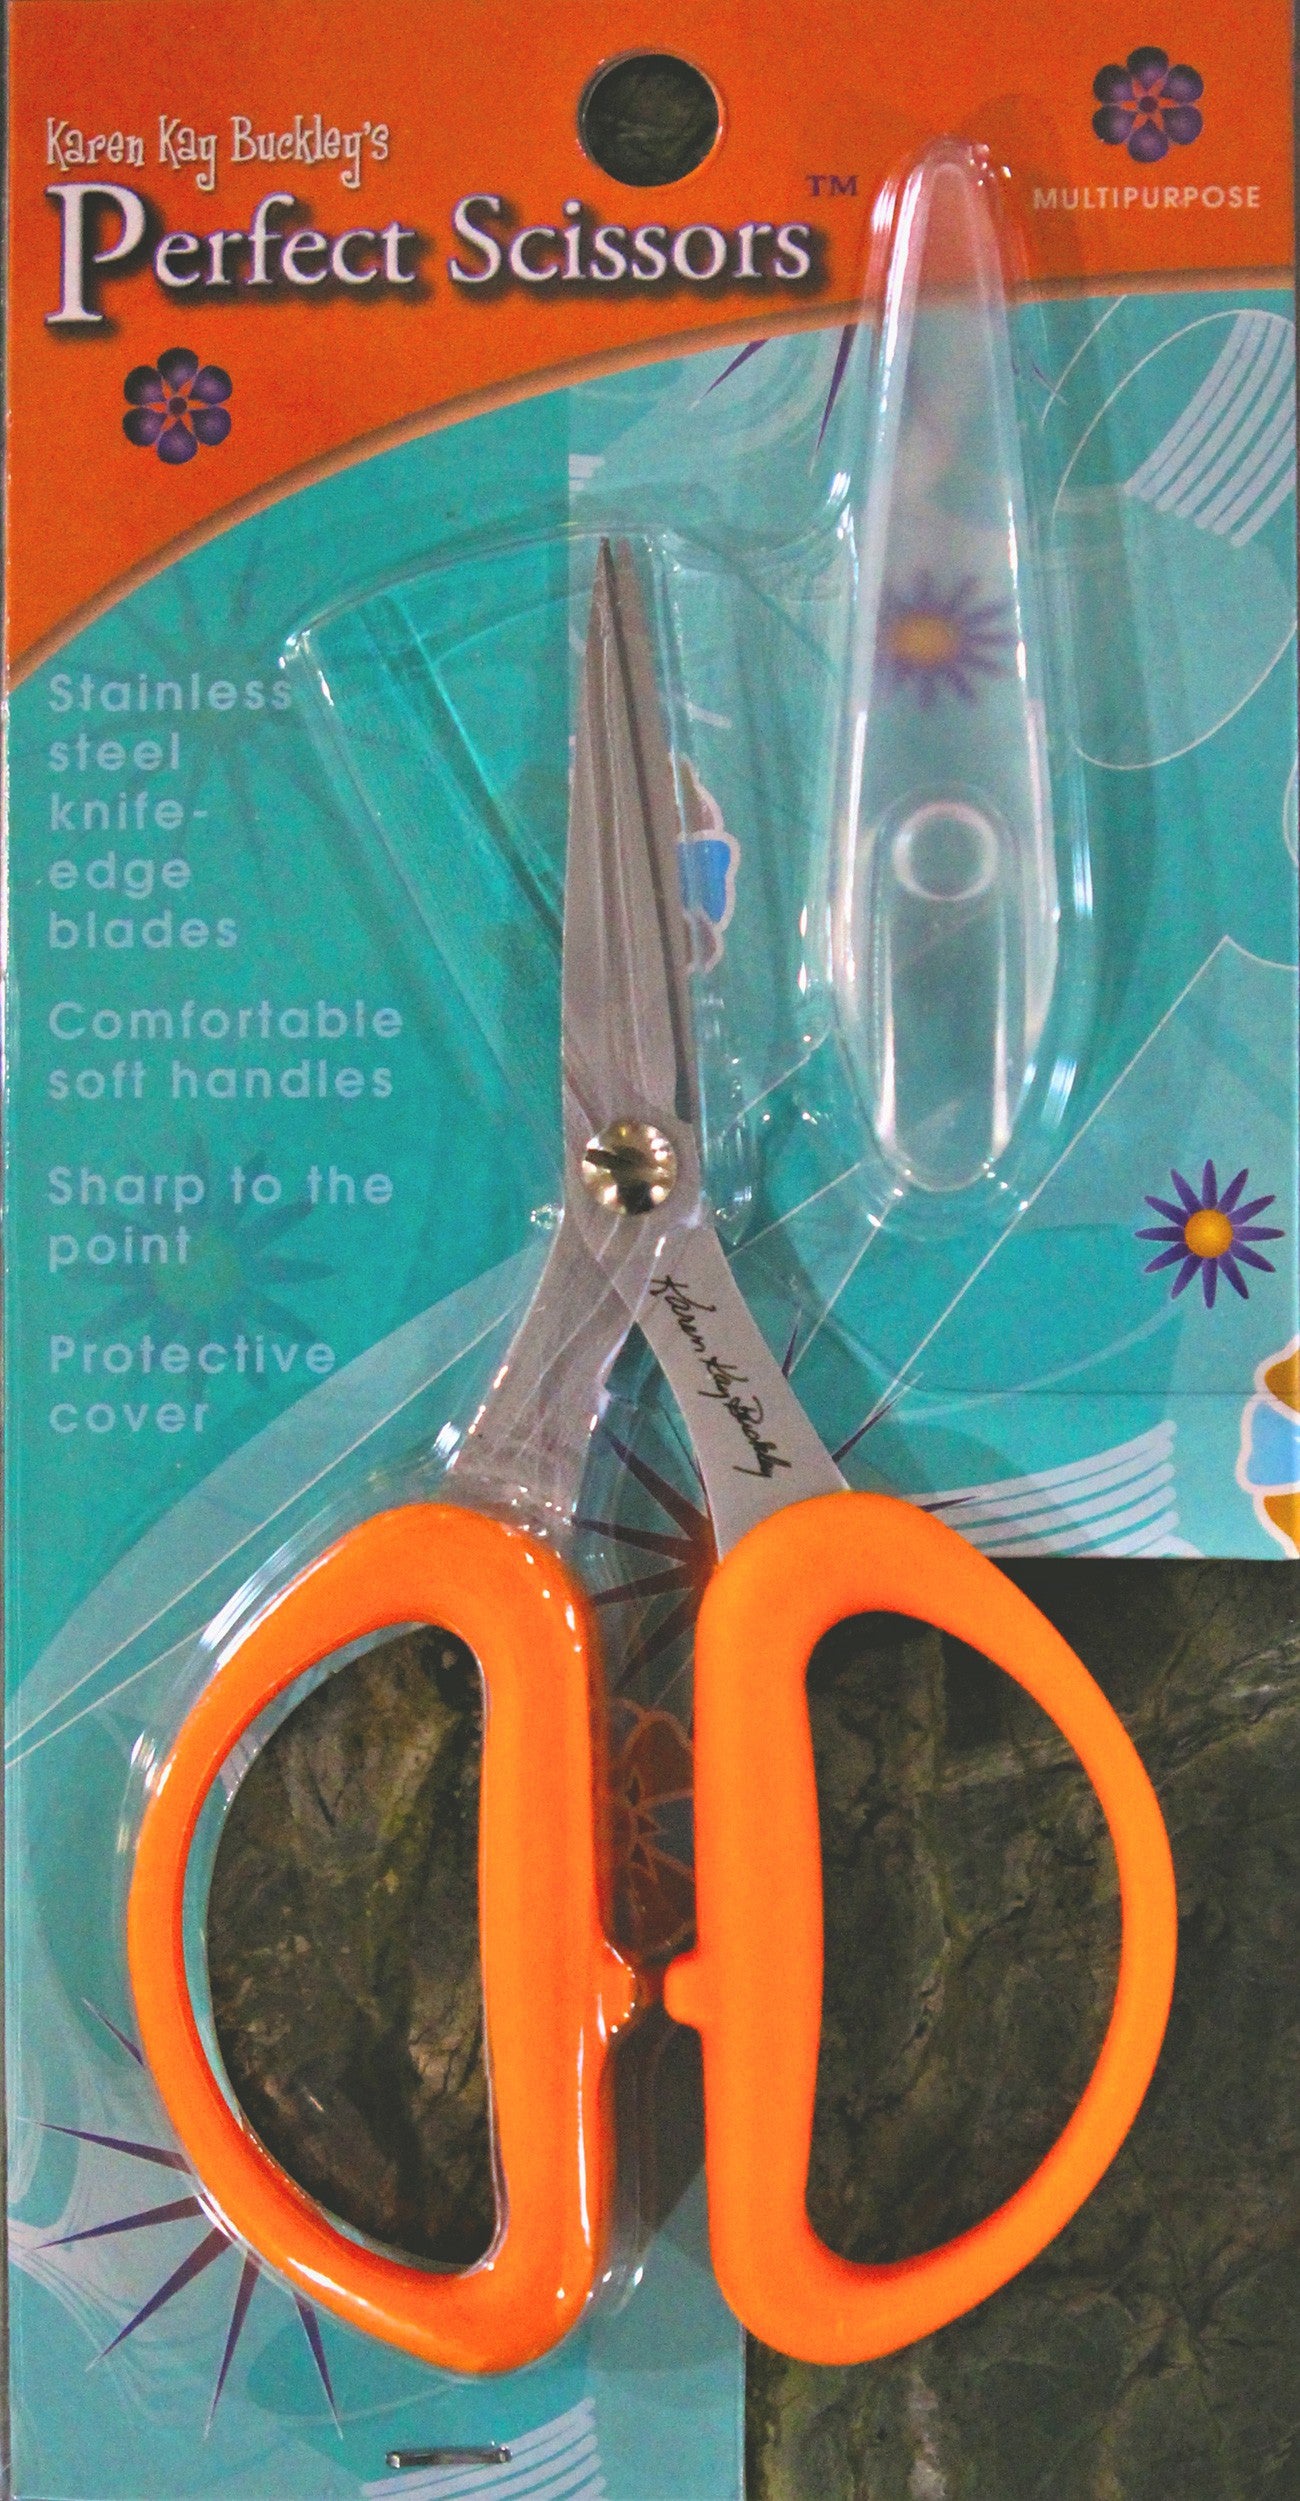 Karen Kay Buckley's Multi-Purpose Perfect Scissors